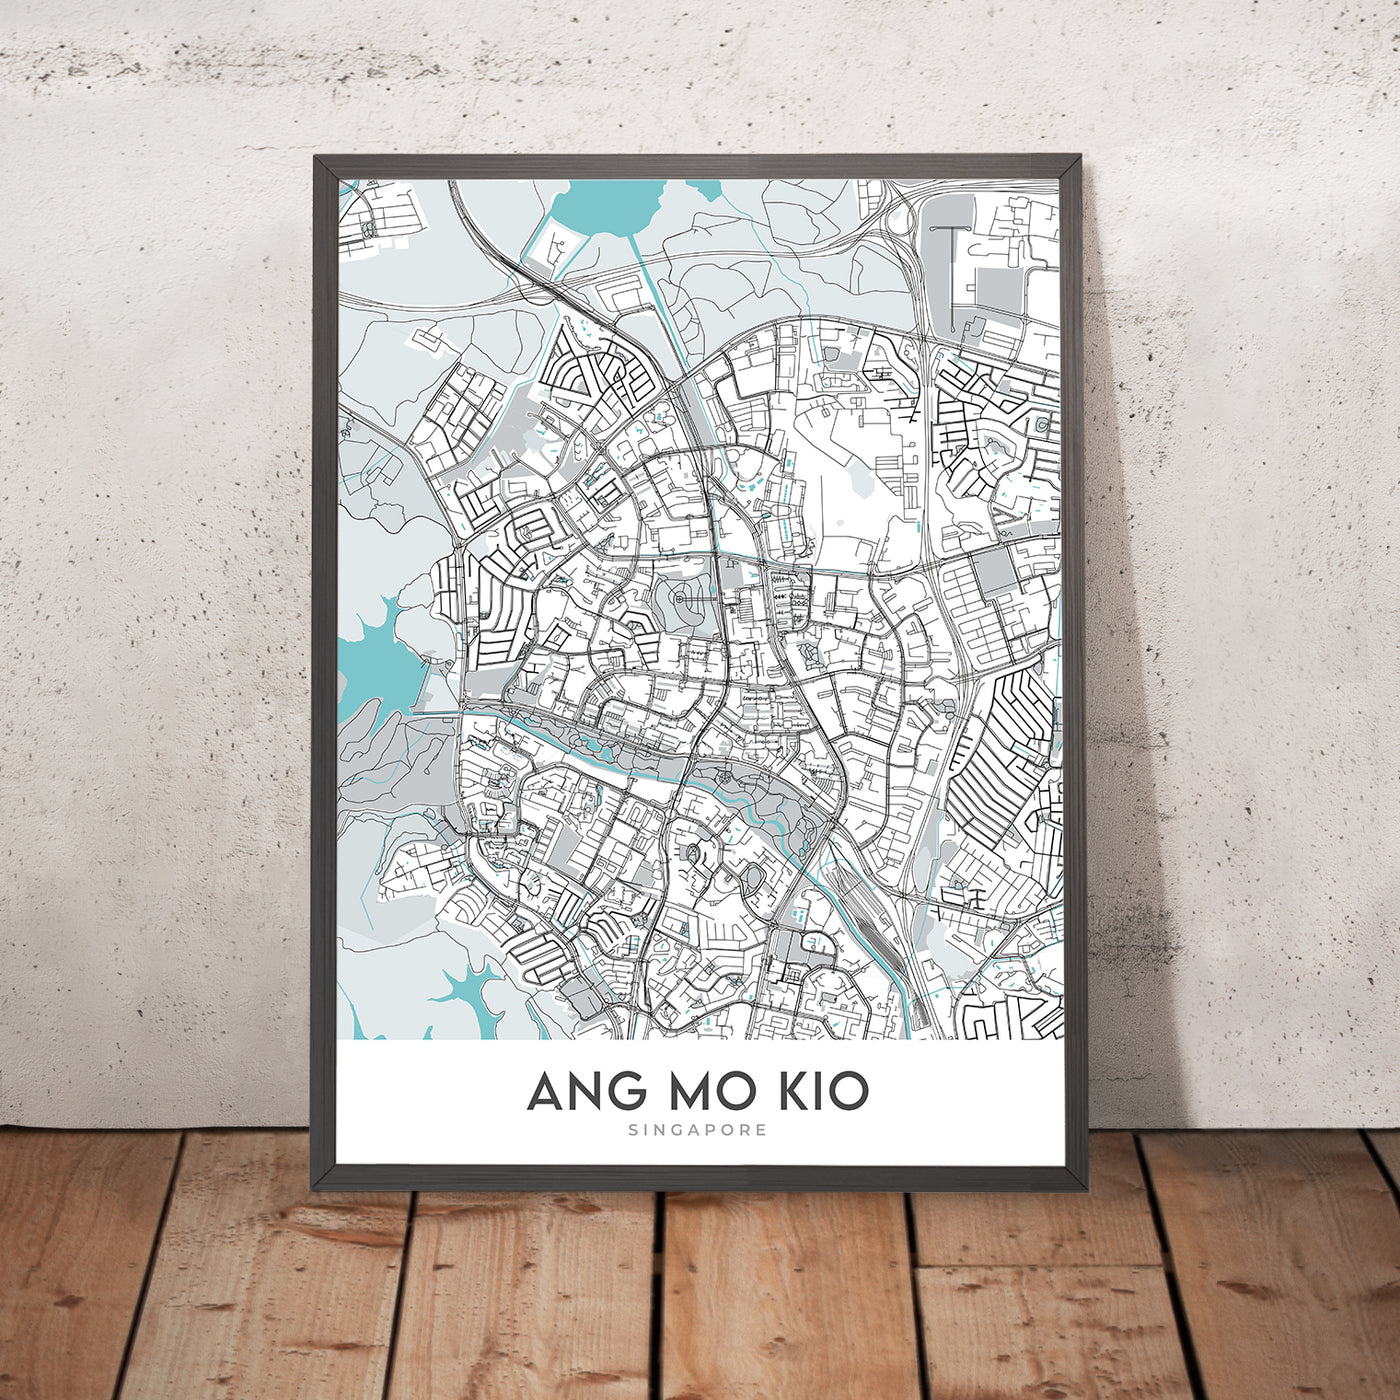 Modern City Map of Ang Mo Kio, Singapore: Bishan-Ang Mo Kio Park, Lower Peirce Reservoir, AMK Hub, Yio Chu Kang Rd, Ang Mo Kio Ave 3